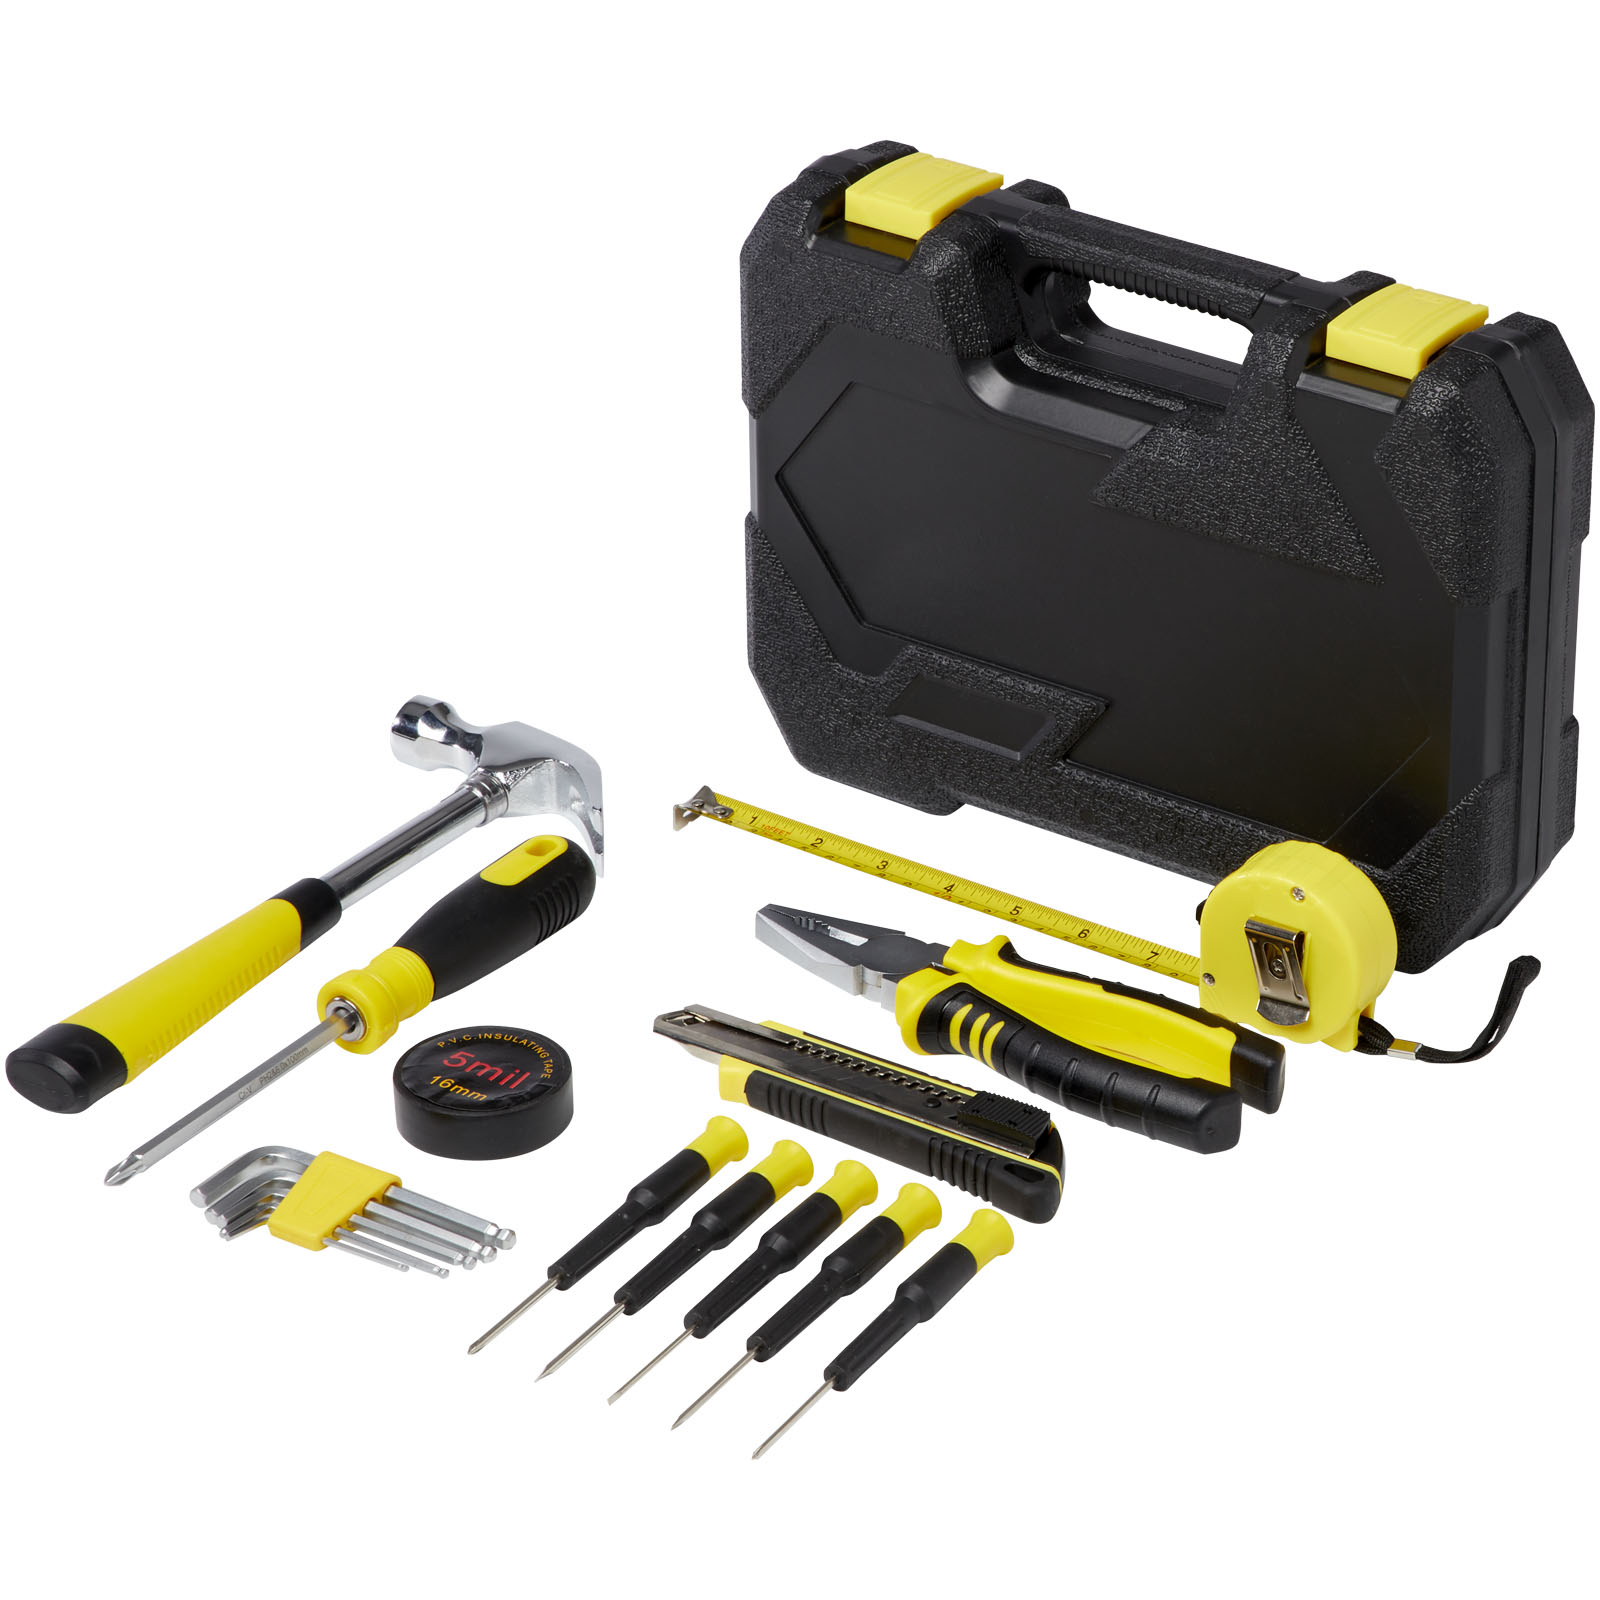 Tool sets - Sounion 16-piece tool box